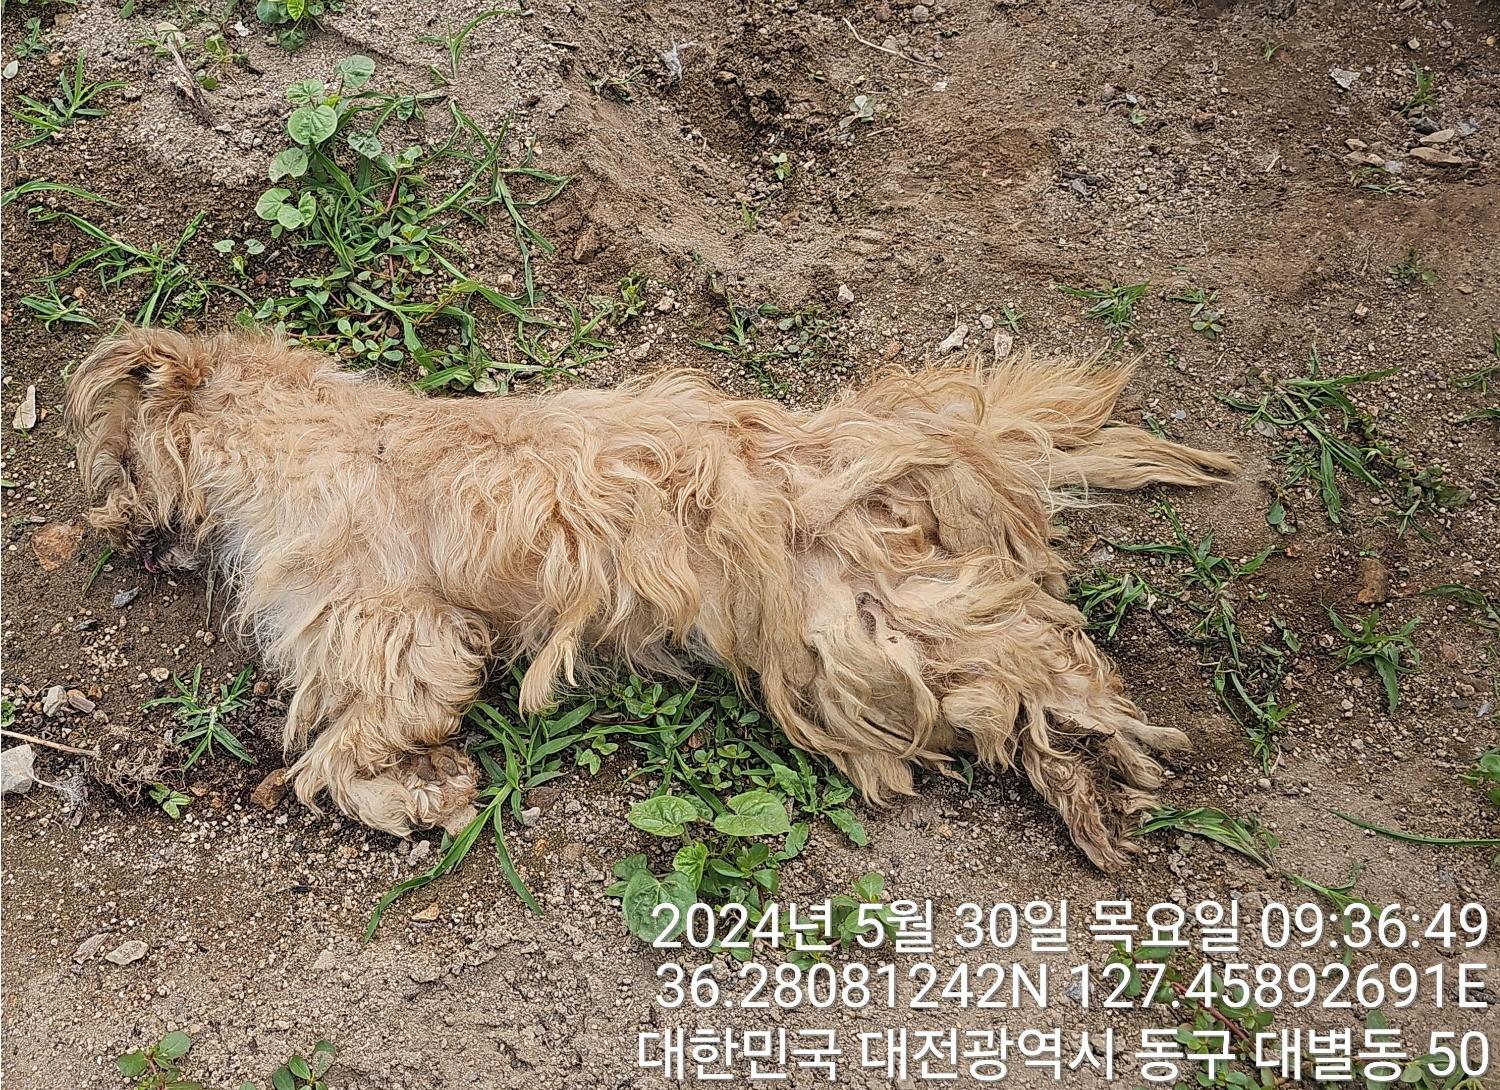 공고 번호가 대전-동구-2024-00149인 믹스견 동물 사진